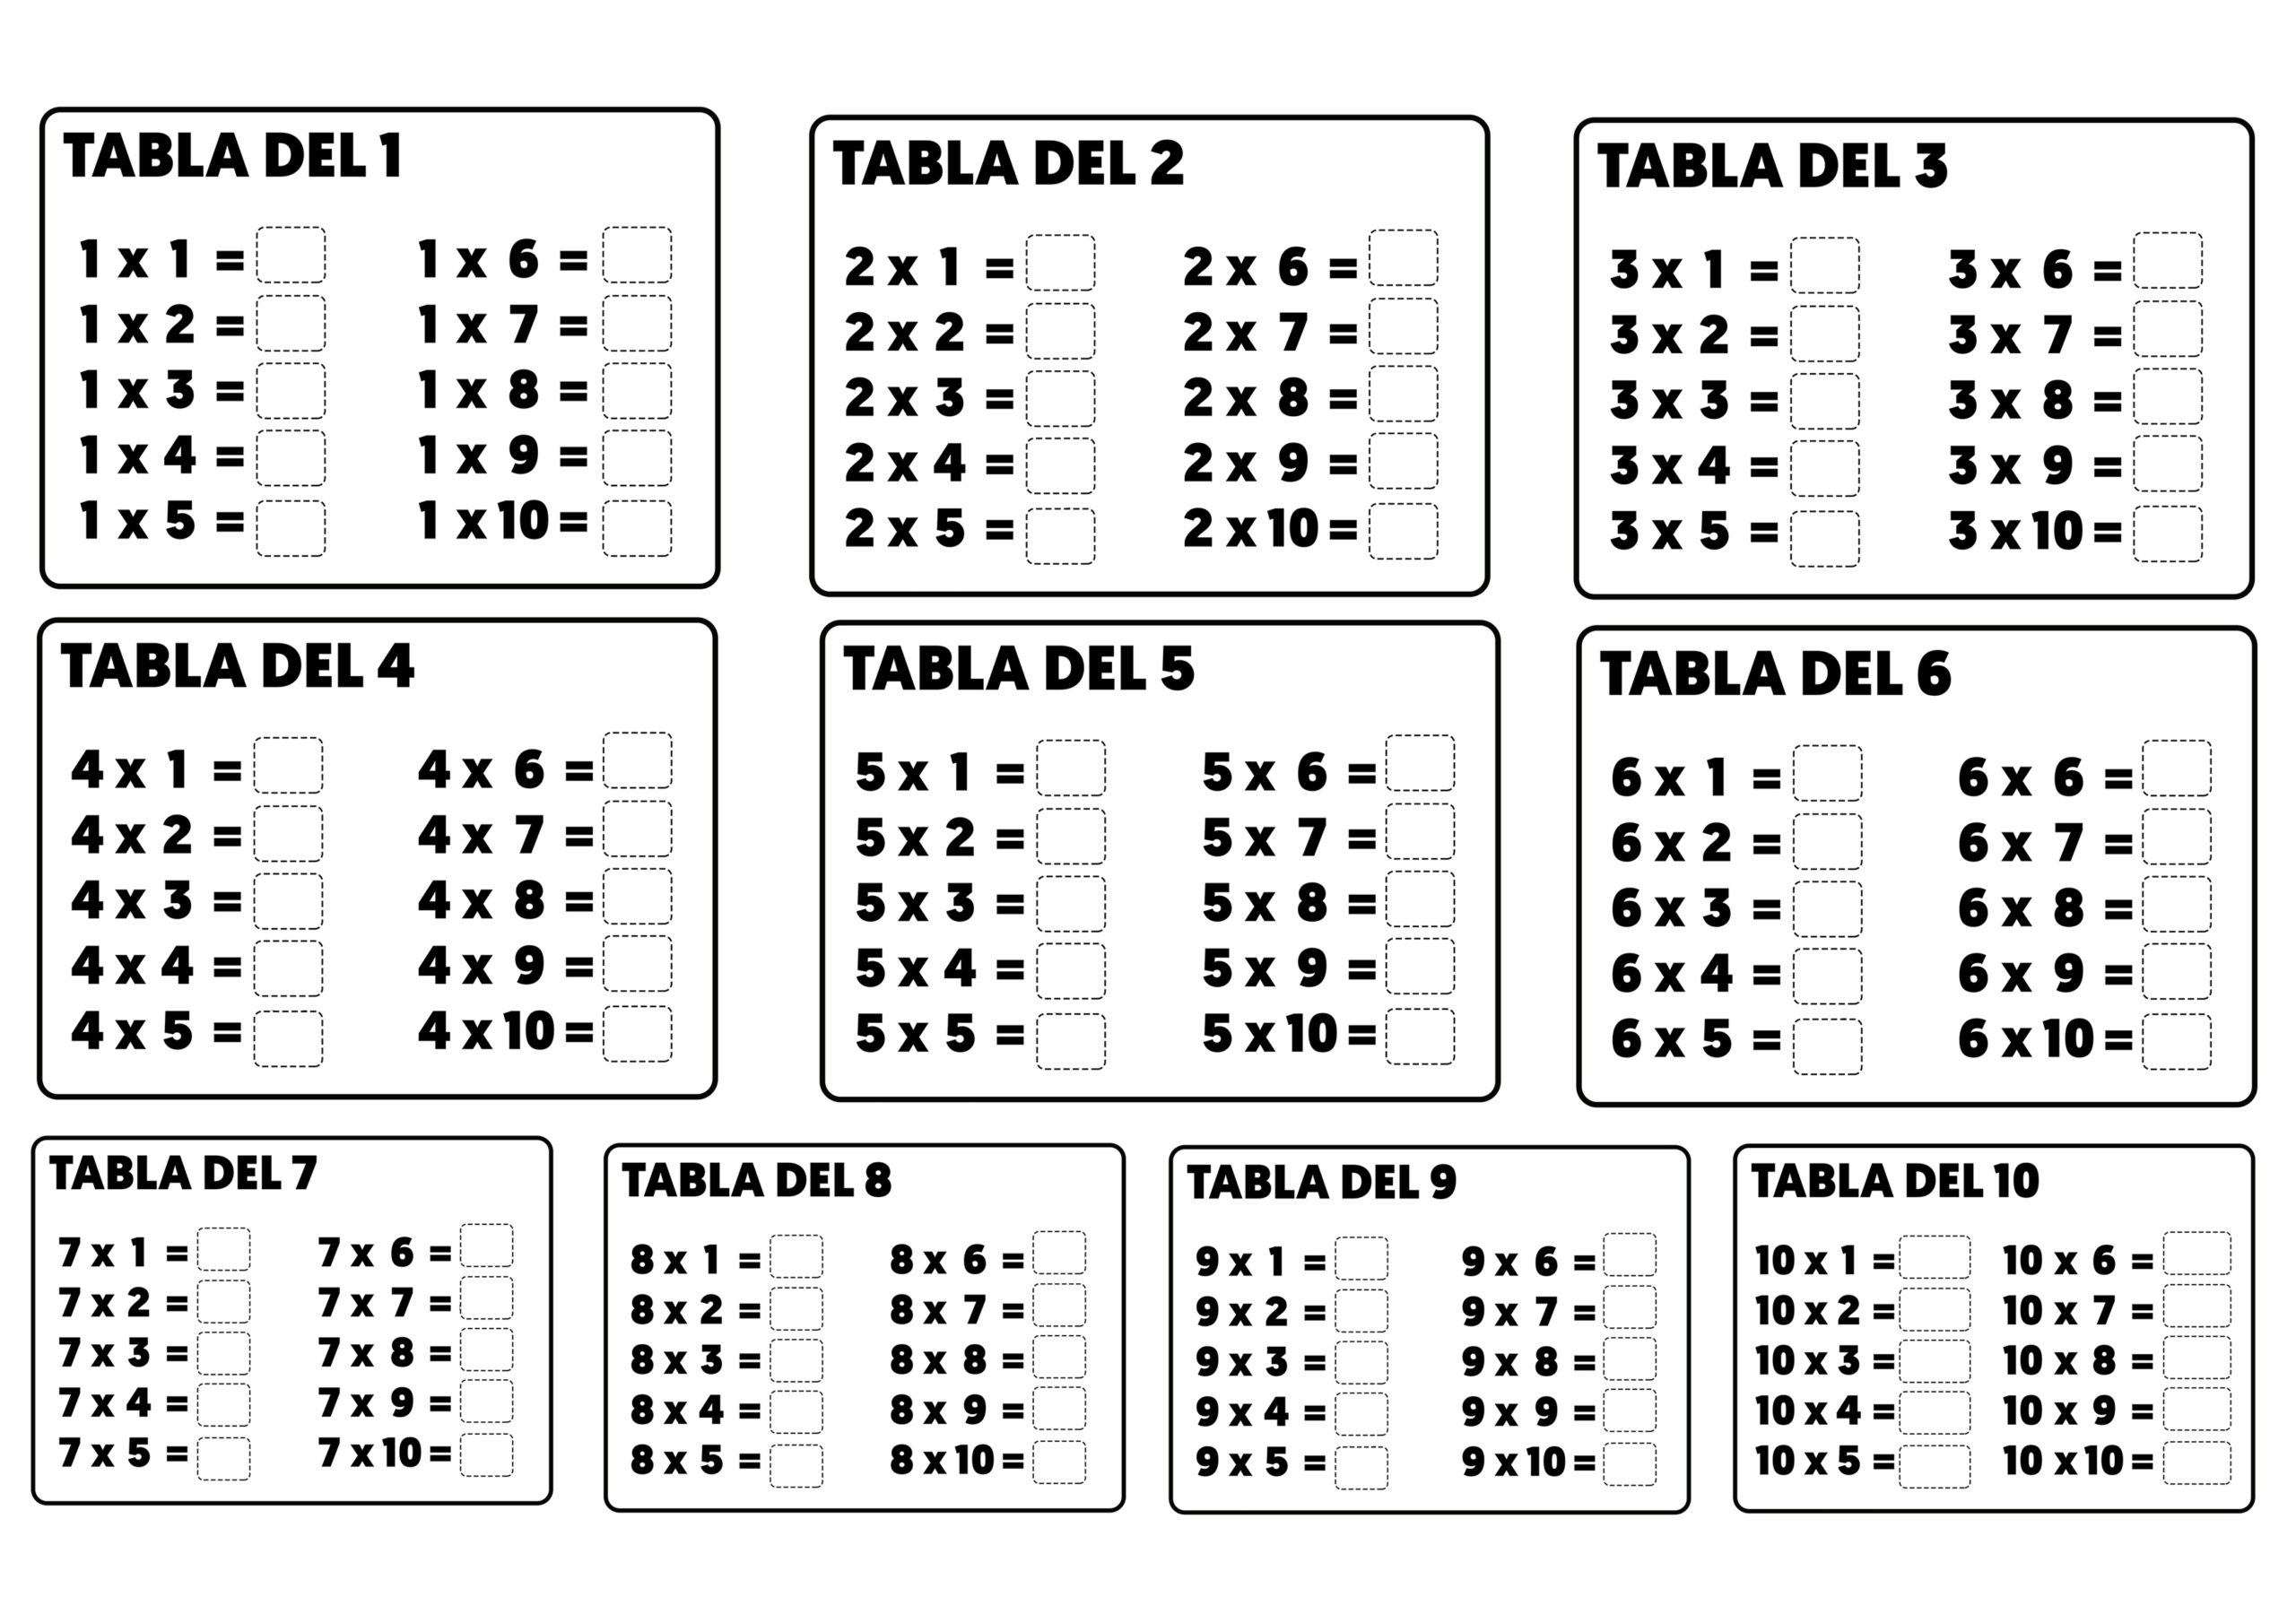 Tablas de multiplicar para completar resolver rellenar.